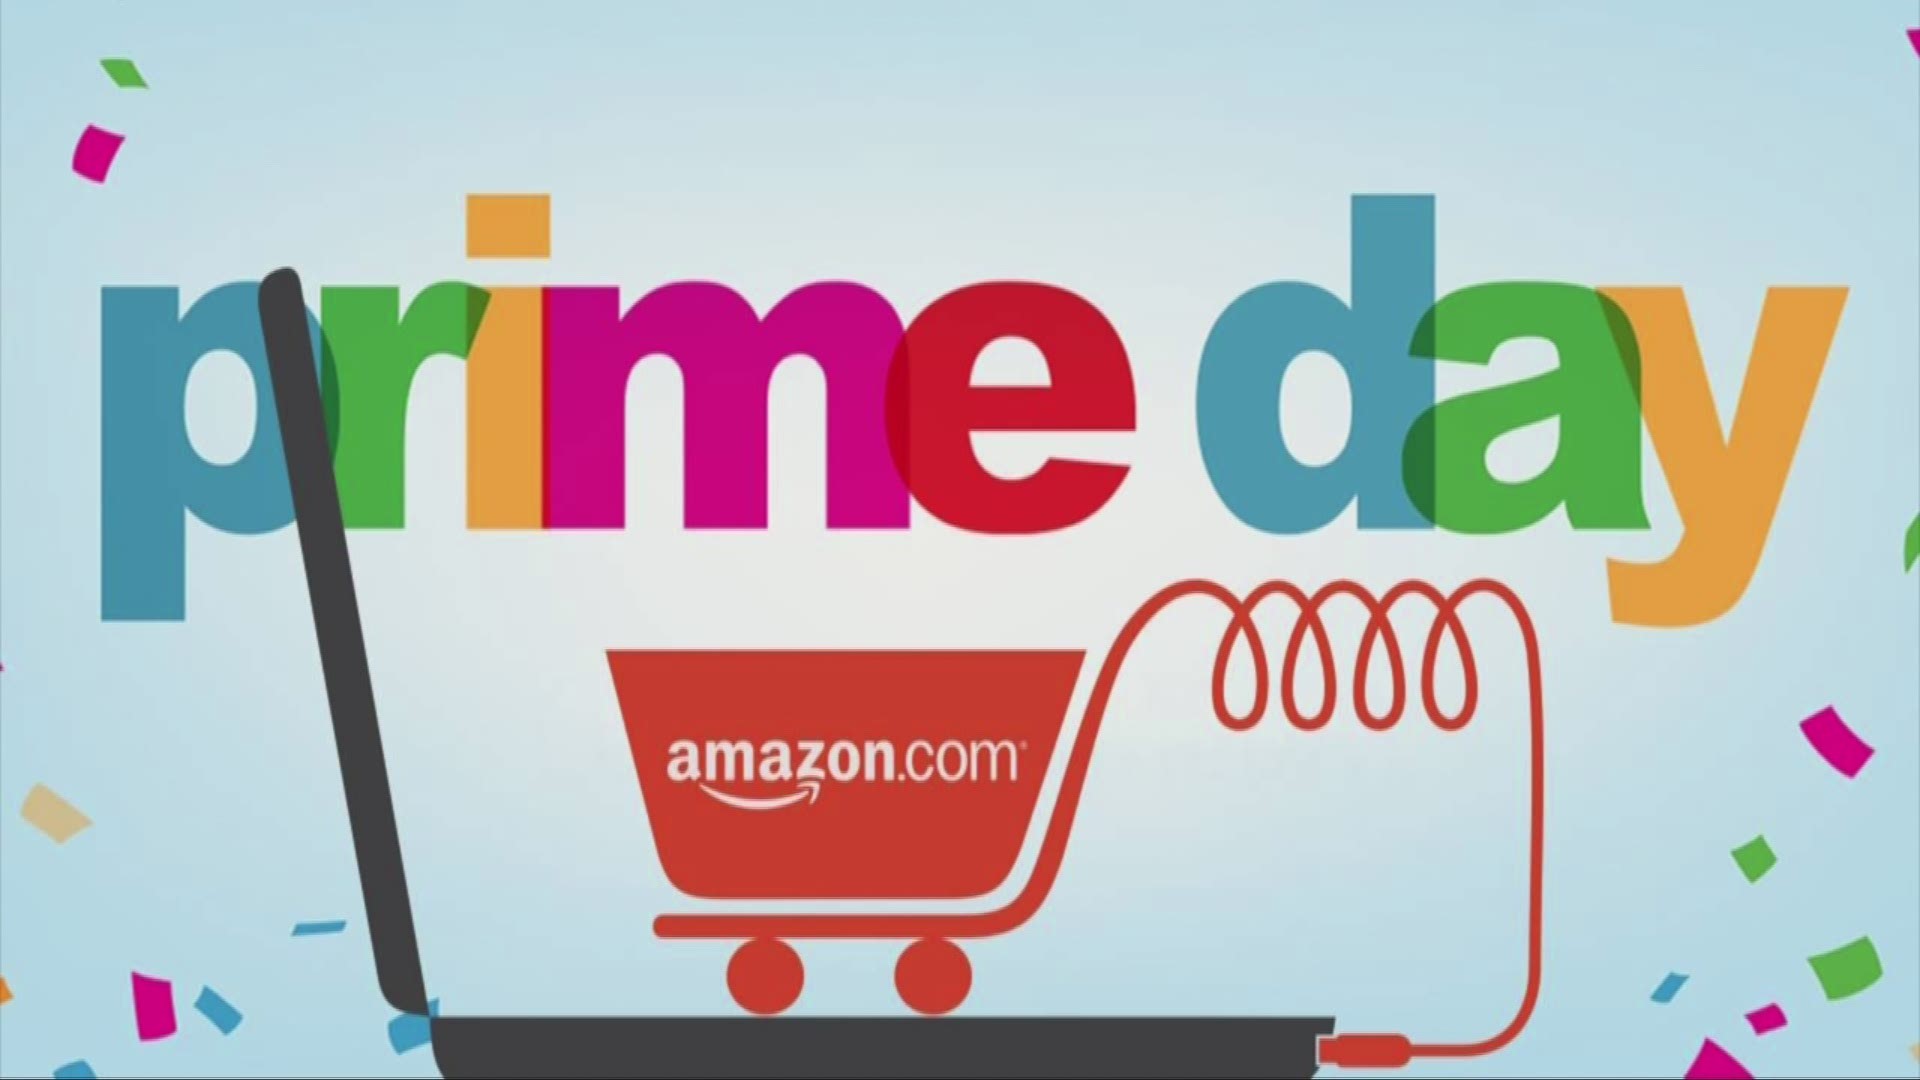 5 ways to win Amazon Prime Day 2017